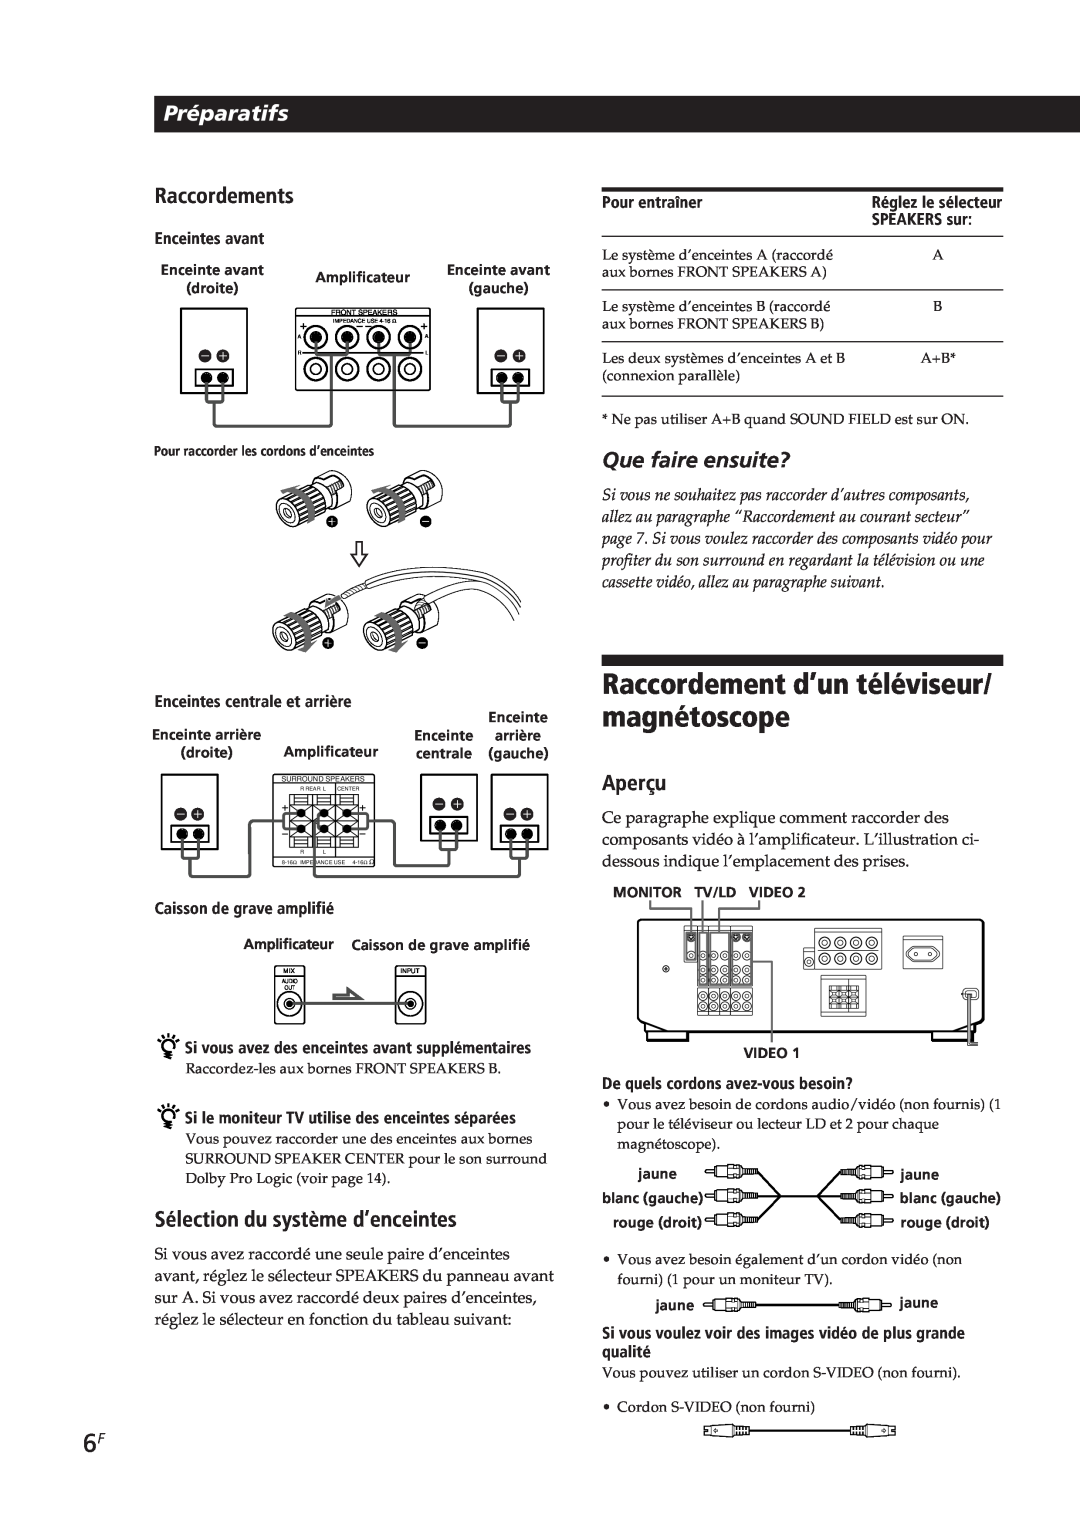 Sony TA-VE700 manual Raccordement d’un téléviseur/ magnétoscope, Préparatifs, Raccordements, Que faire ensuite?, Aperçu 